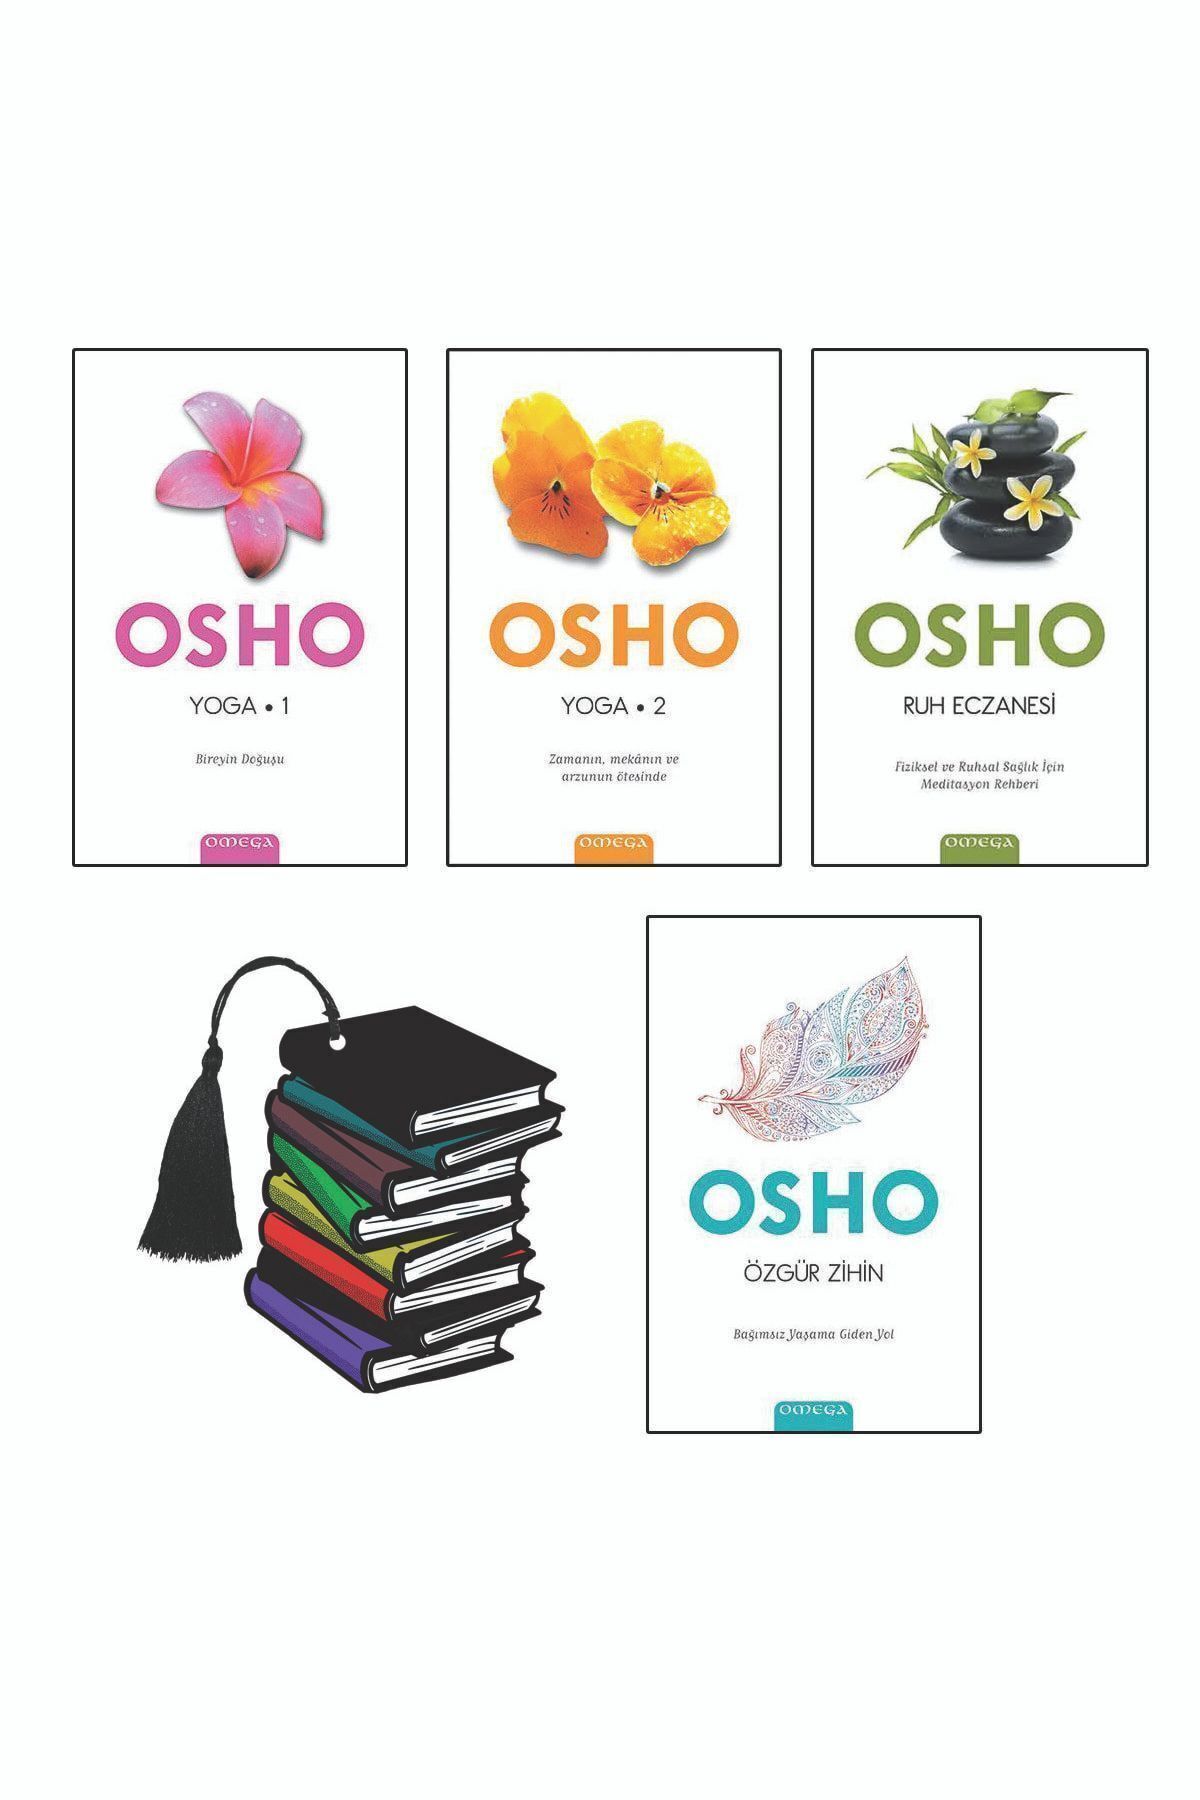 Omega Yayınları Osho - Yoga 1 - Yoga 2 - Ruh Eczanesi - Özgür Zihin - 4 Kitap Set - Yırtılmaz Ayraç Hediye